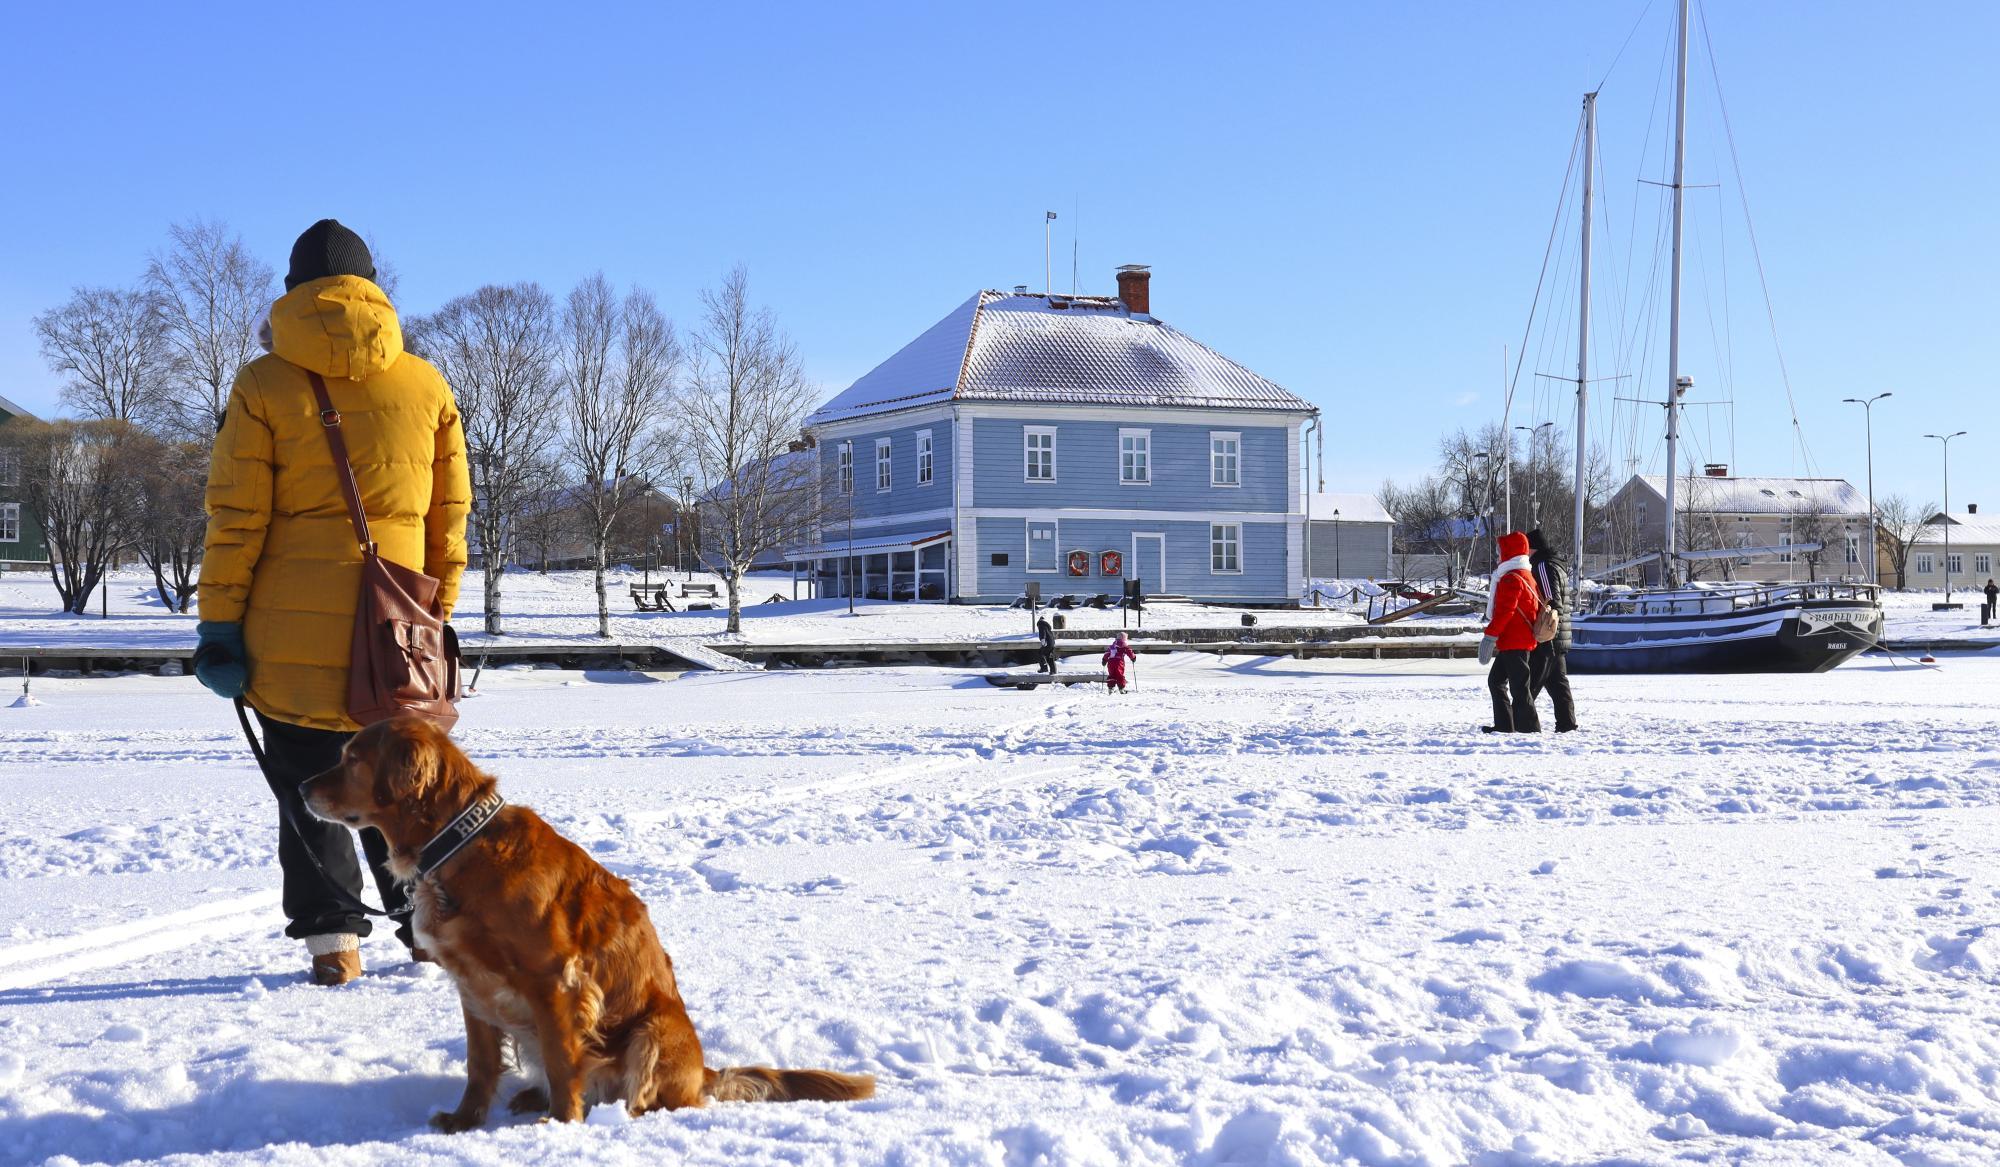 Människor, en hund och ett skepp i ett snöigt landskap. Träd och gamla byggnader i bakgrunden.